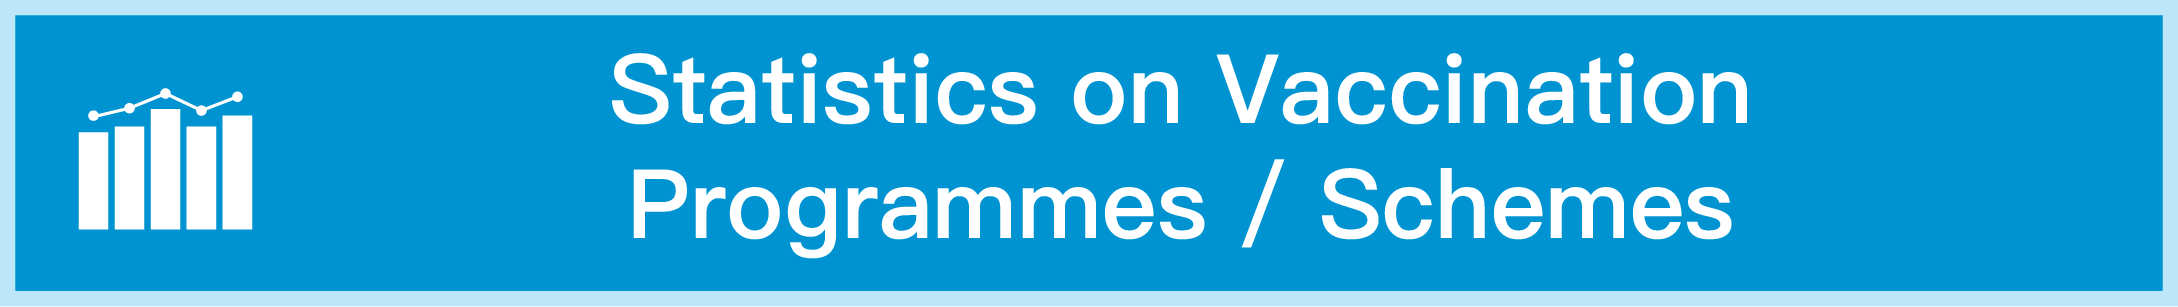 Statistics on Vaccination Programmes/Schemes